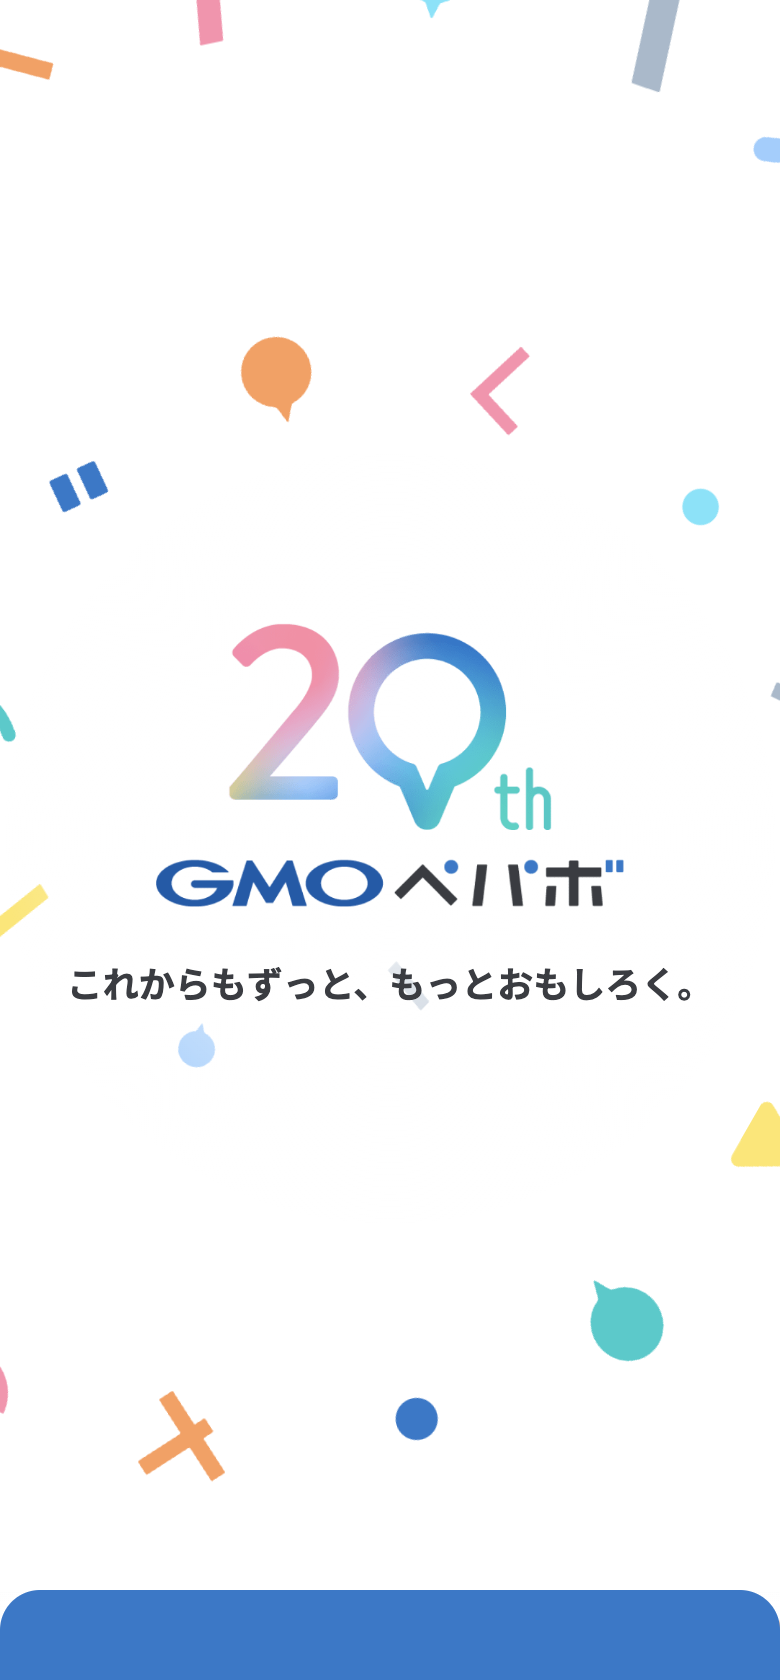 GMOペパボ株式会社 20周年特設サイト